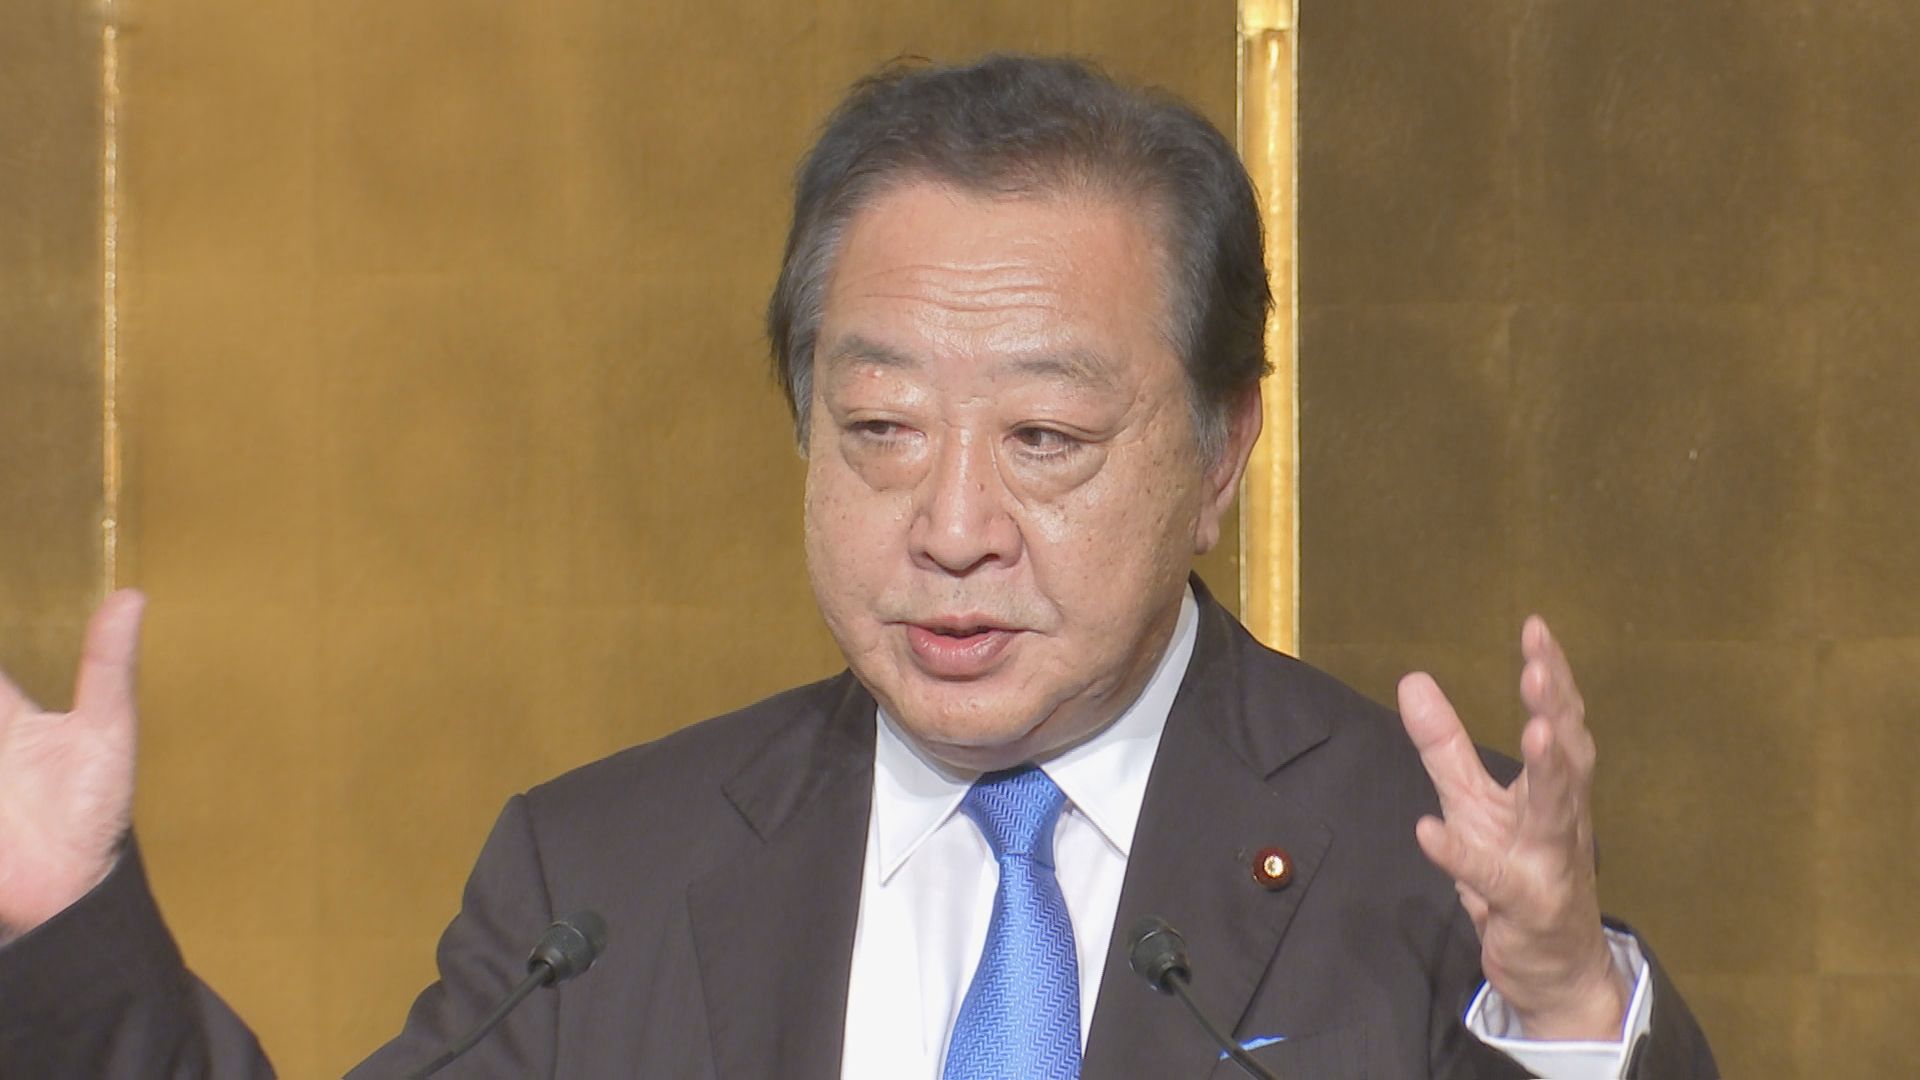 立憲民主党・野田元総理「私が私がとは思っていない」9月予定の代表選立候補に慎重な考え